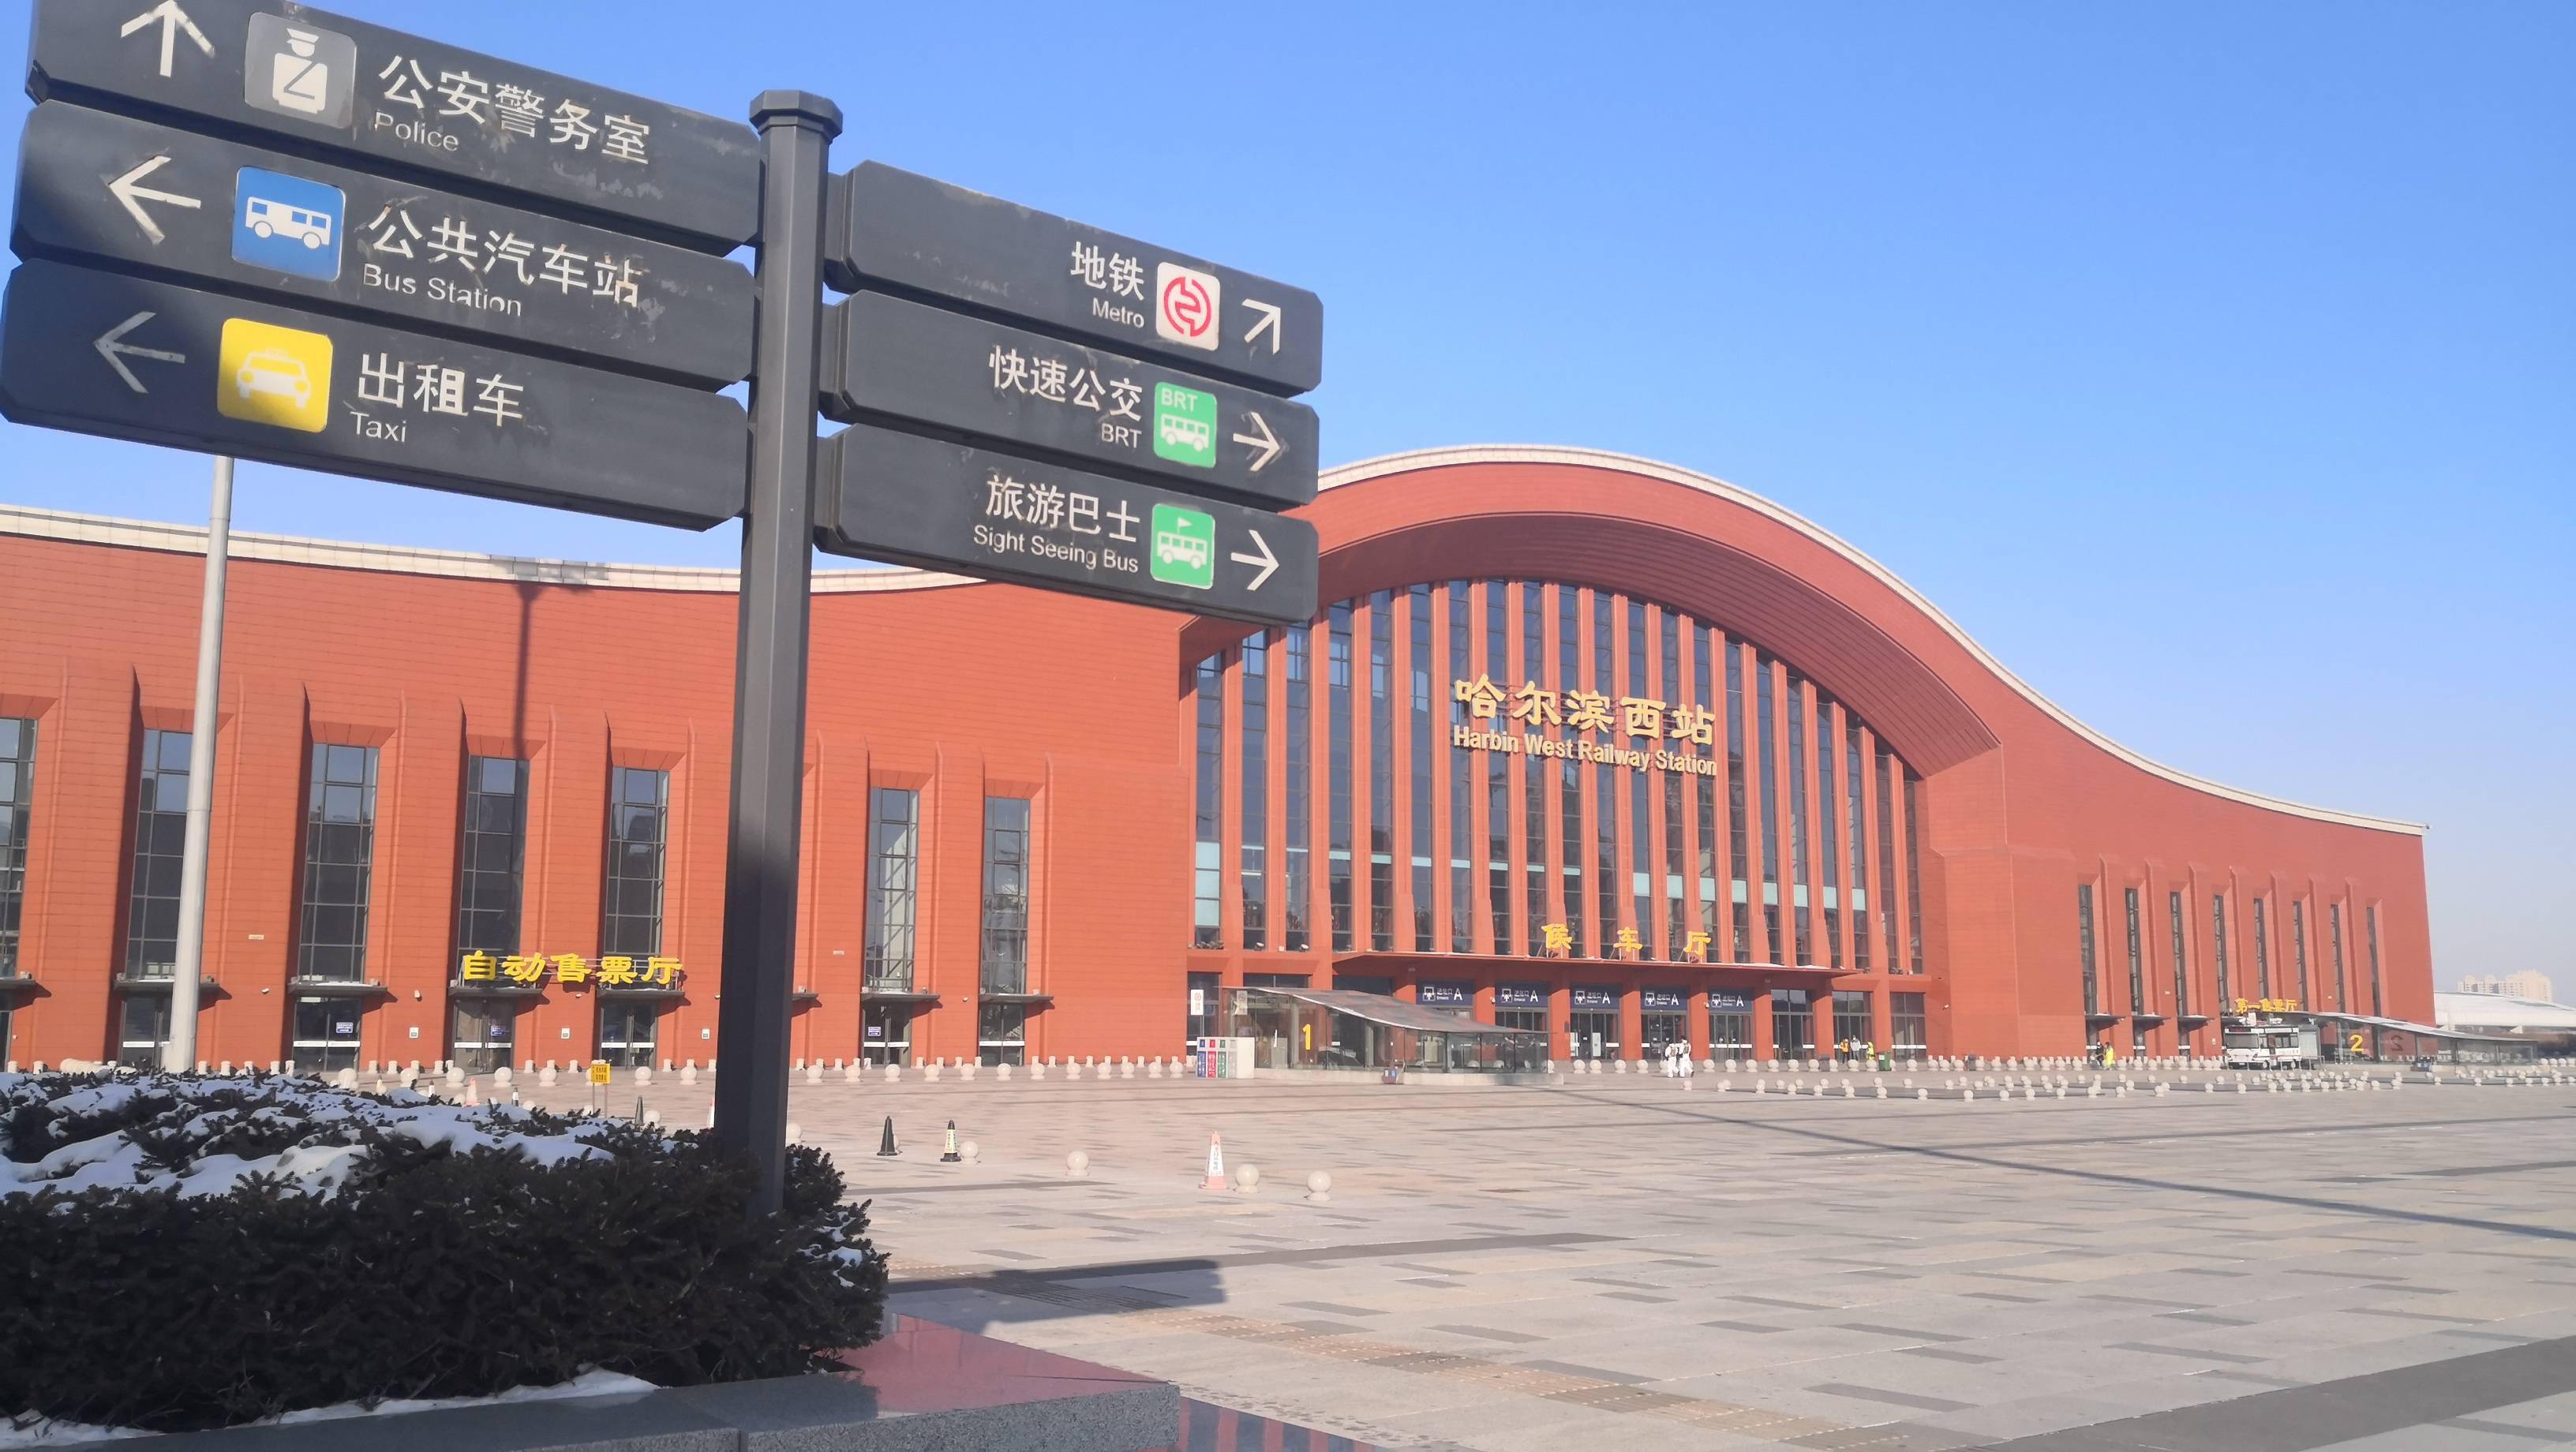 火车站人员稀少,公路客运站关闭,哈尔滨迎来了最冷清的春运首日